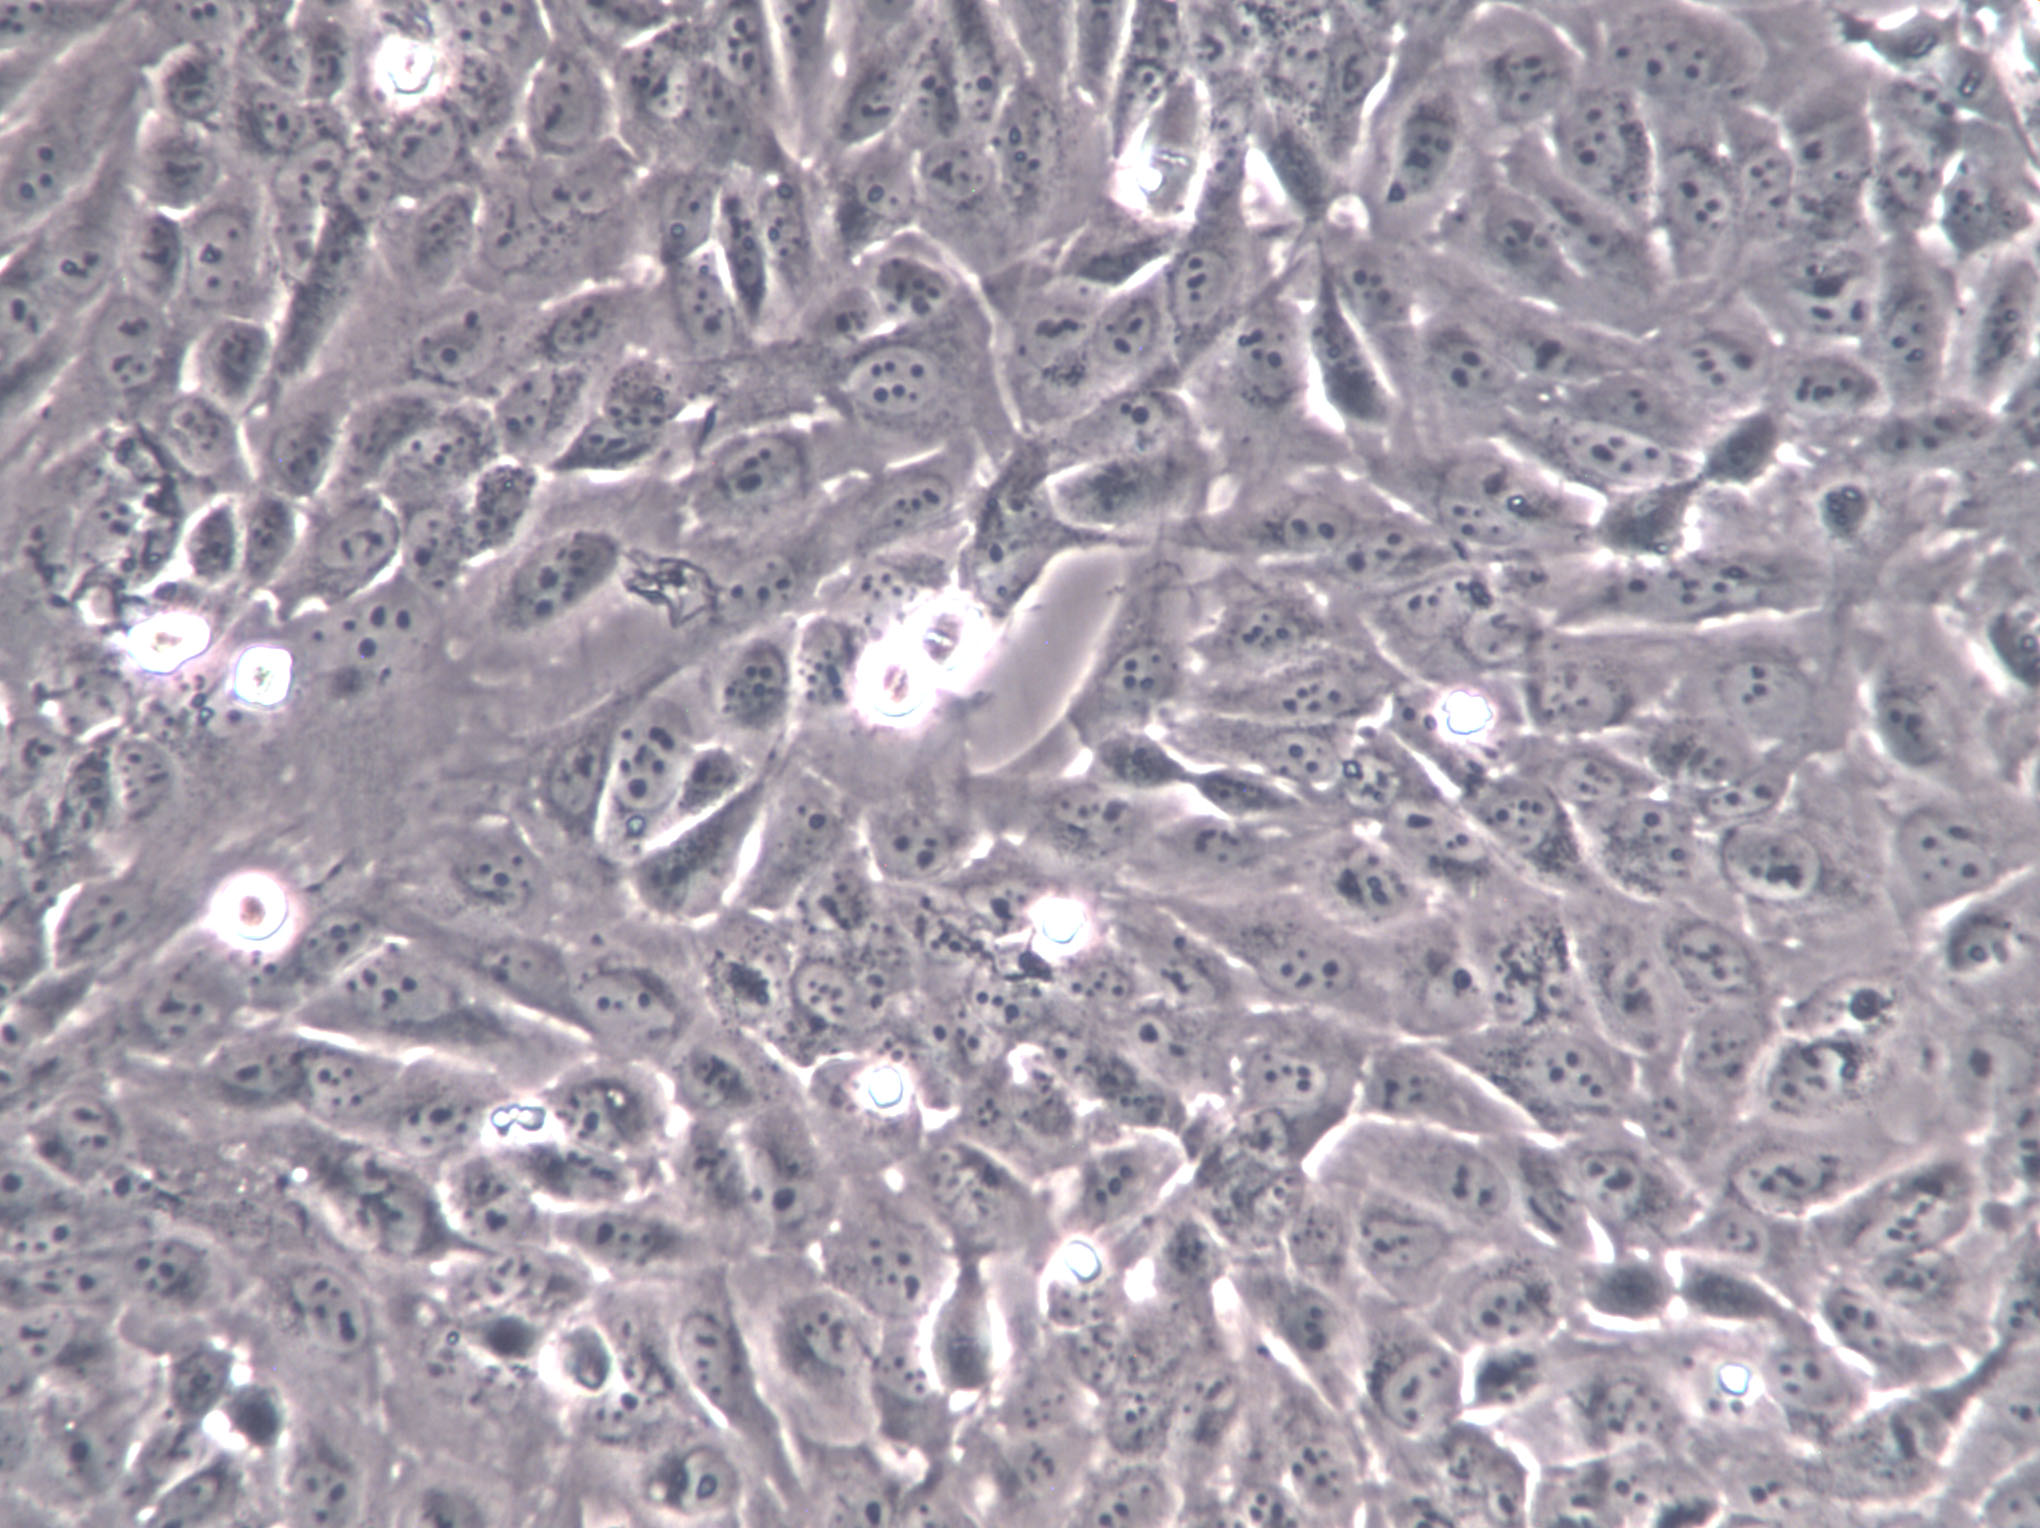 TE-7 Cell|人食管鳞癌细胞